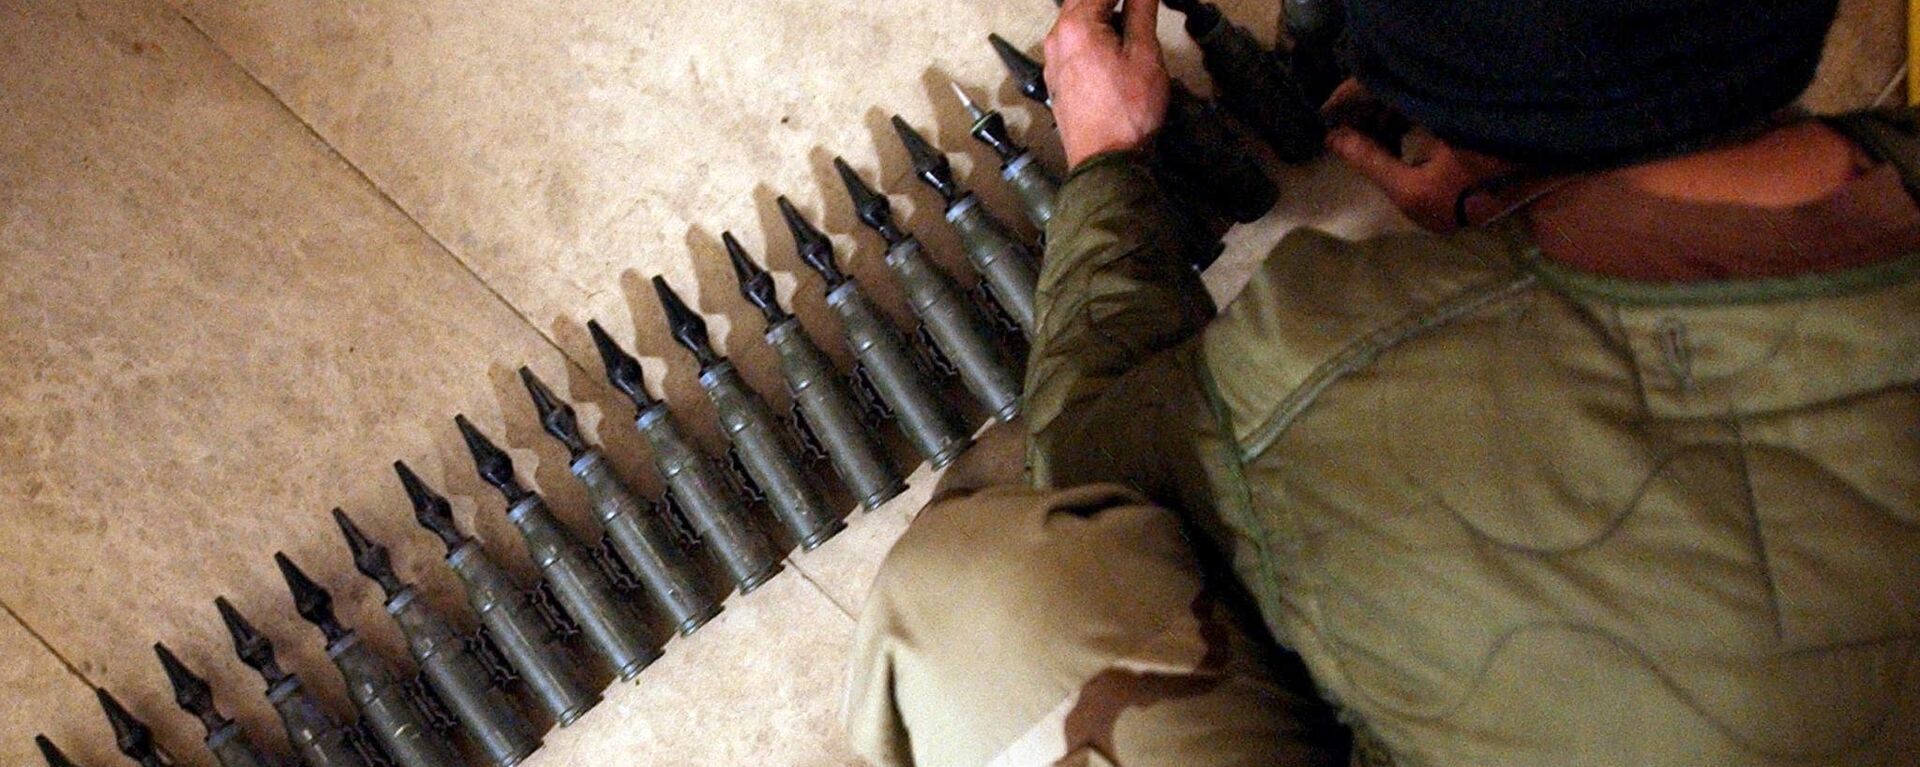 Un soldado del Ejército de EEUU cuenta los proyectiles de 25 mm con uranio empobrecido en 2004, durante la invasión de Irak. - Sputnik Mundo, 1920, 23.07.2022